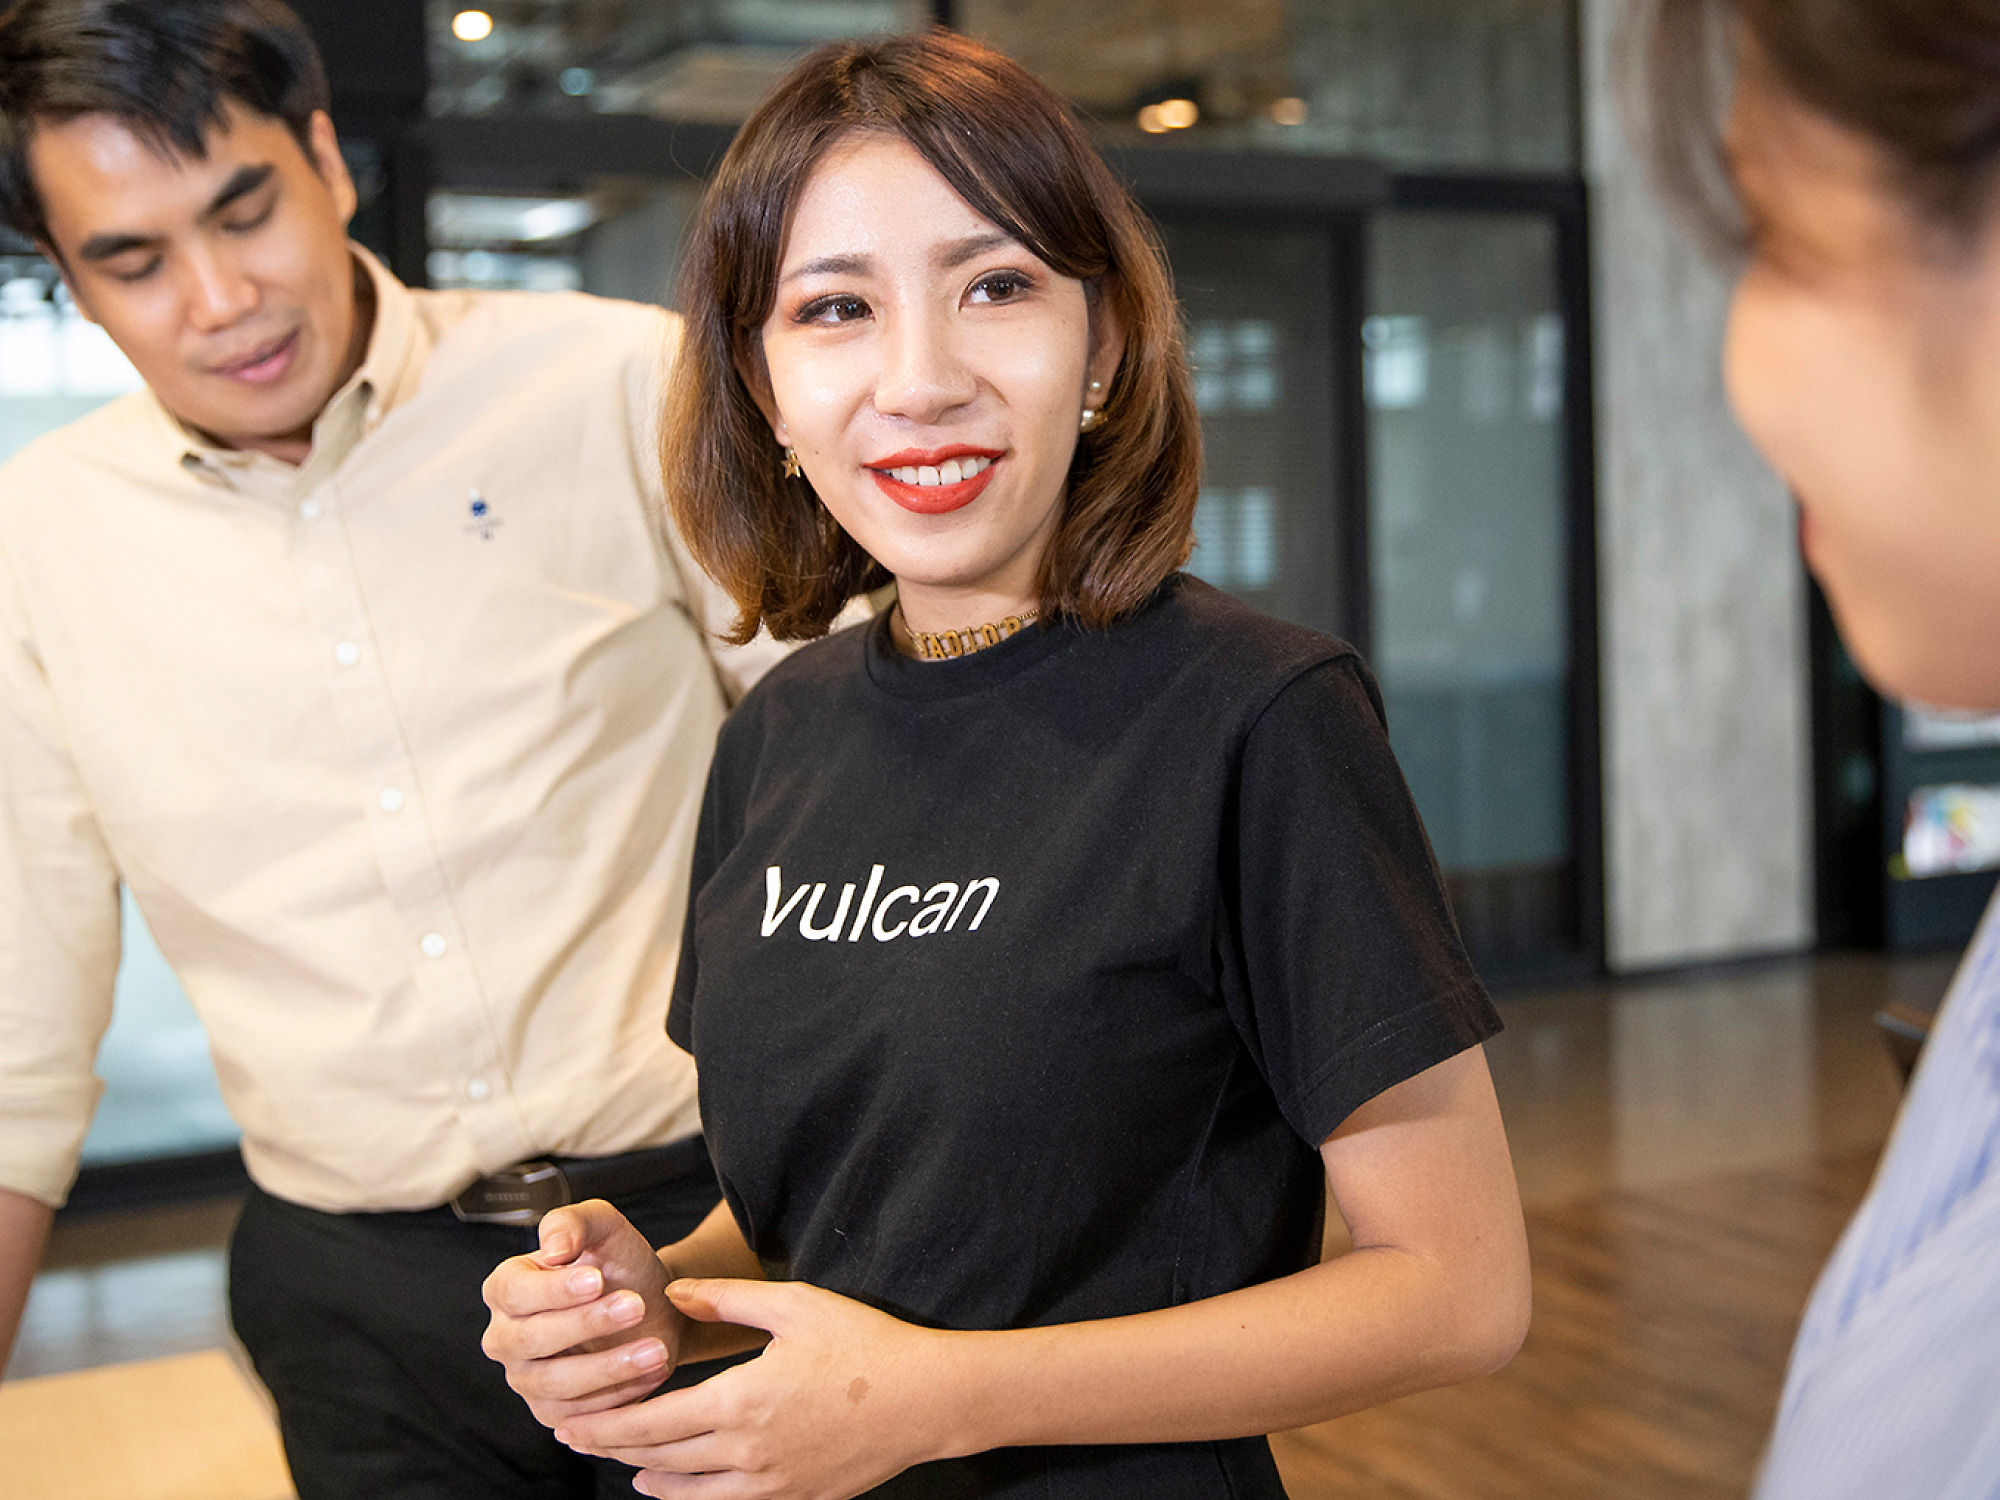 Mlada žena u crnoj majici s natpisom vulcan smiješi se suradniku u modernom uredskom okruženju s još jednim muškim kolegom